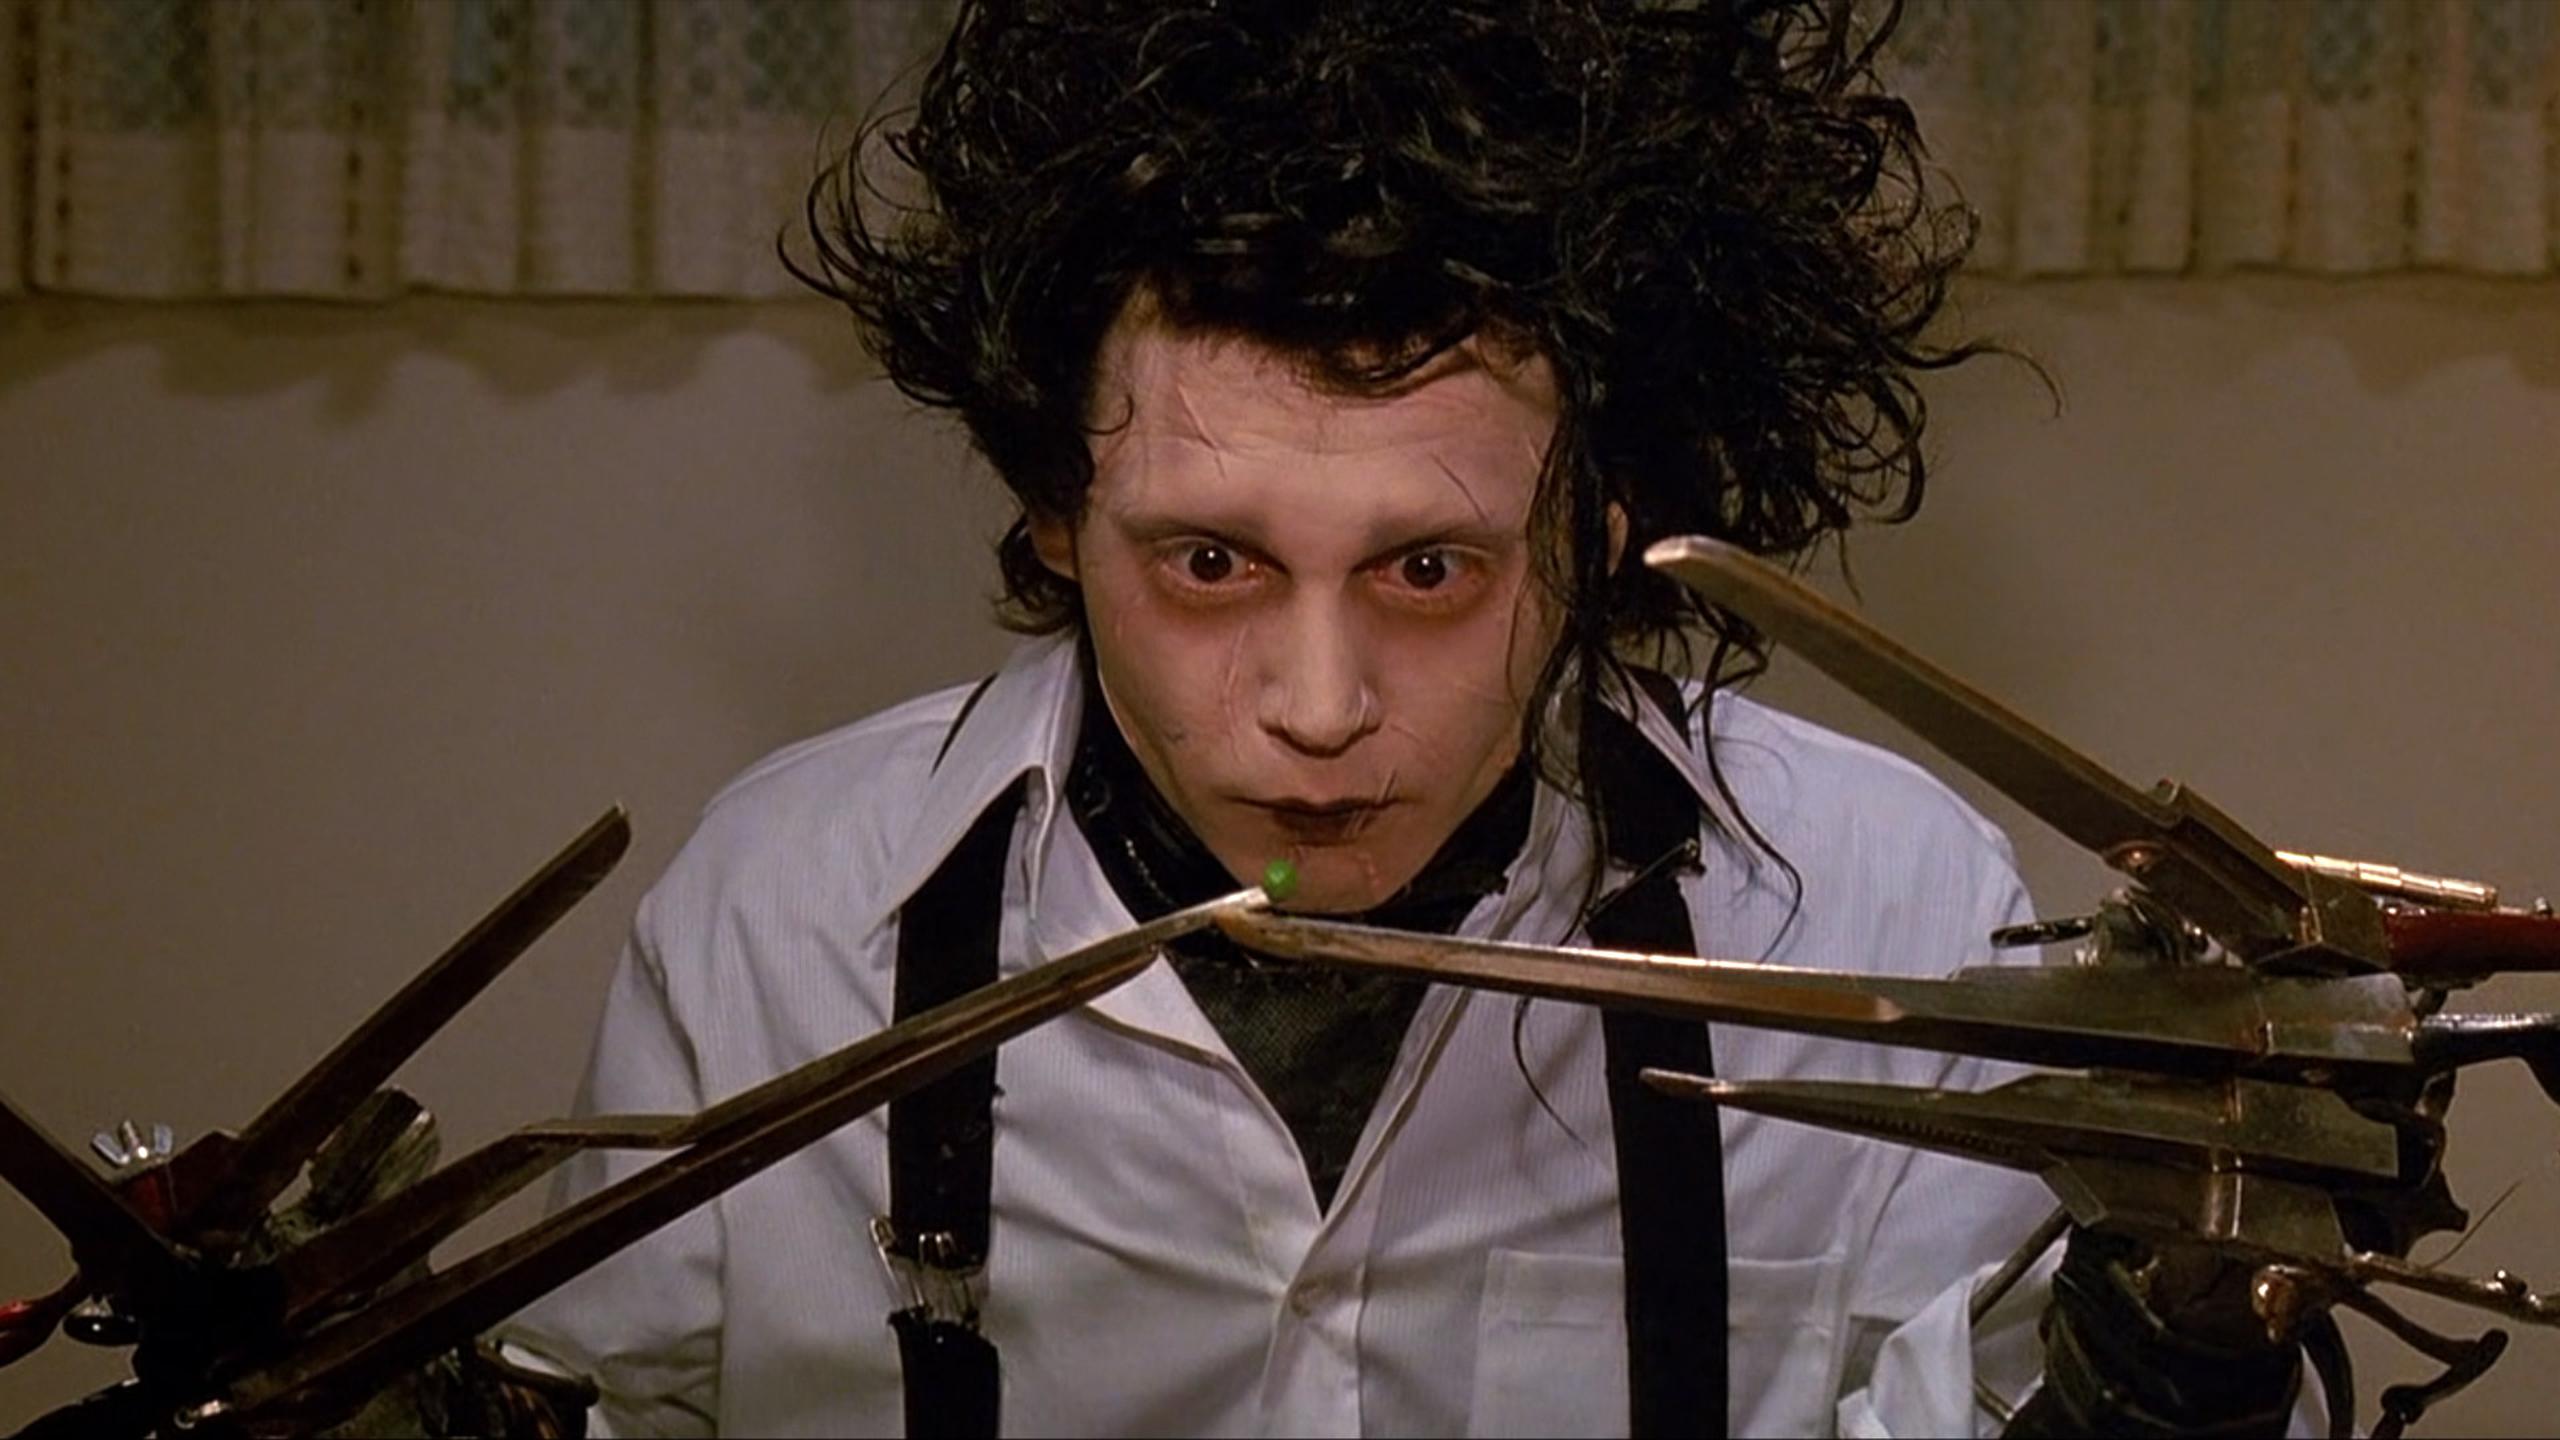 Johnny Depp protagonizó la película "Edward Scissorhands", que estrenó en 1990.